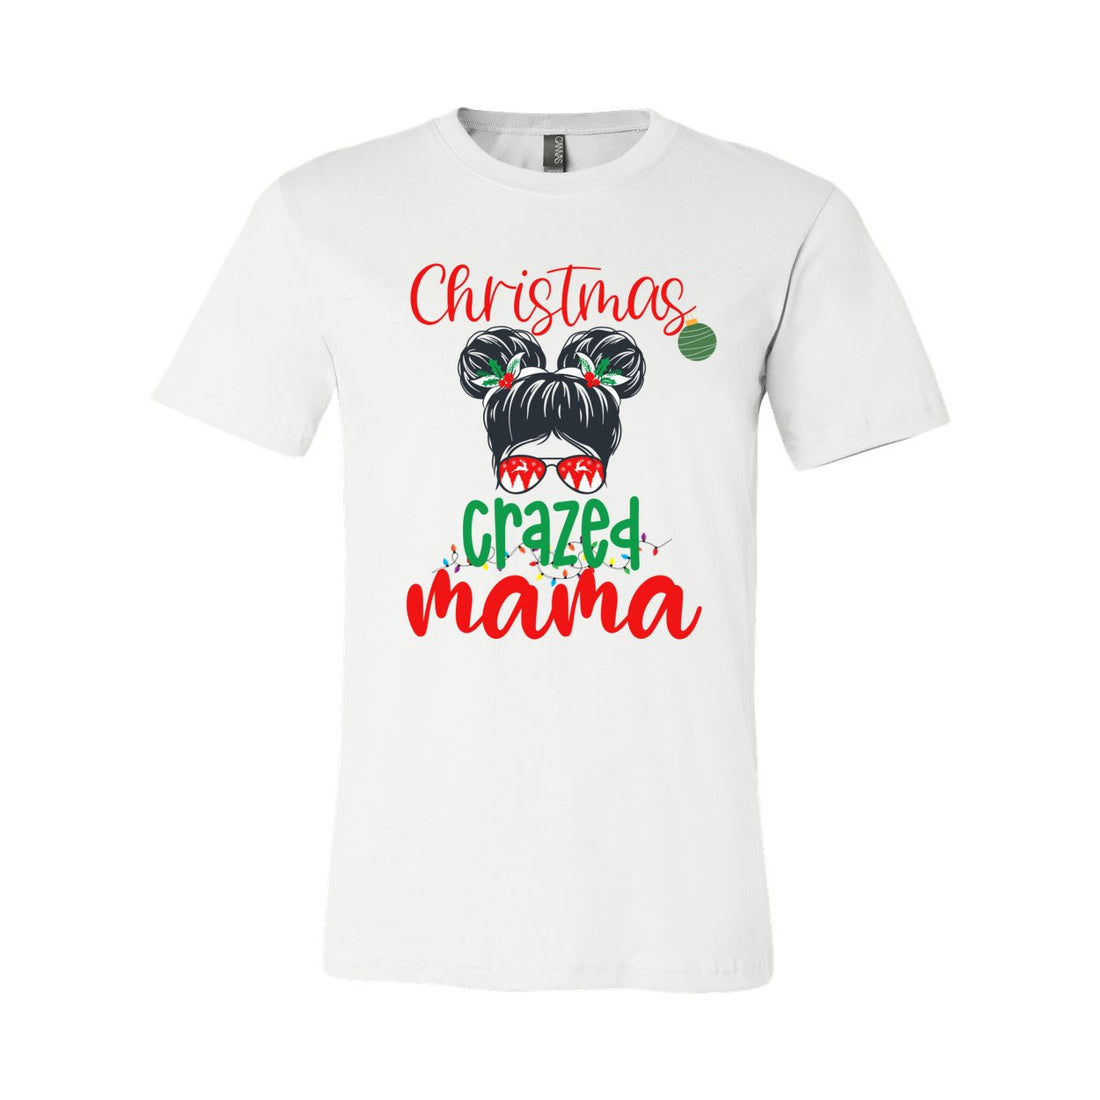 Christmas Crazed Mama - T-Shirts - Positively Sassy - Christmas Crazed Mama